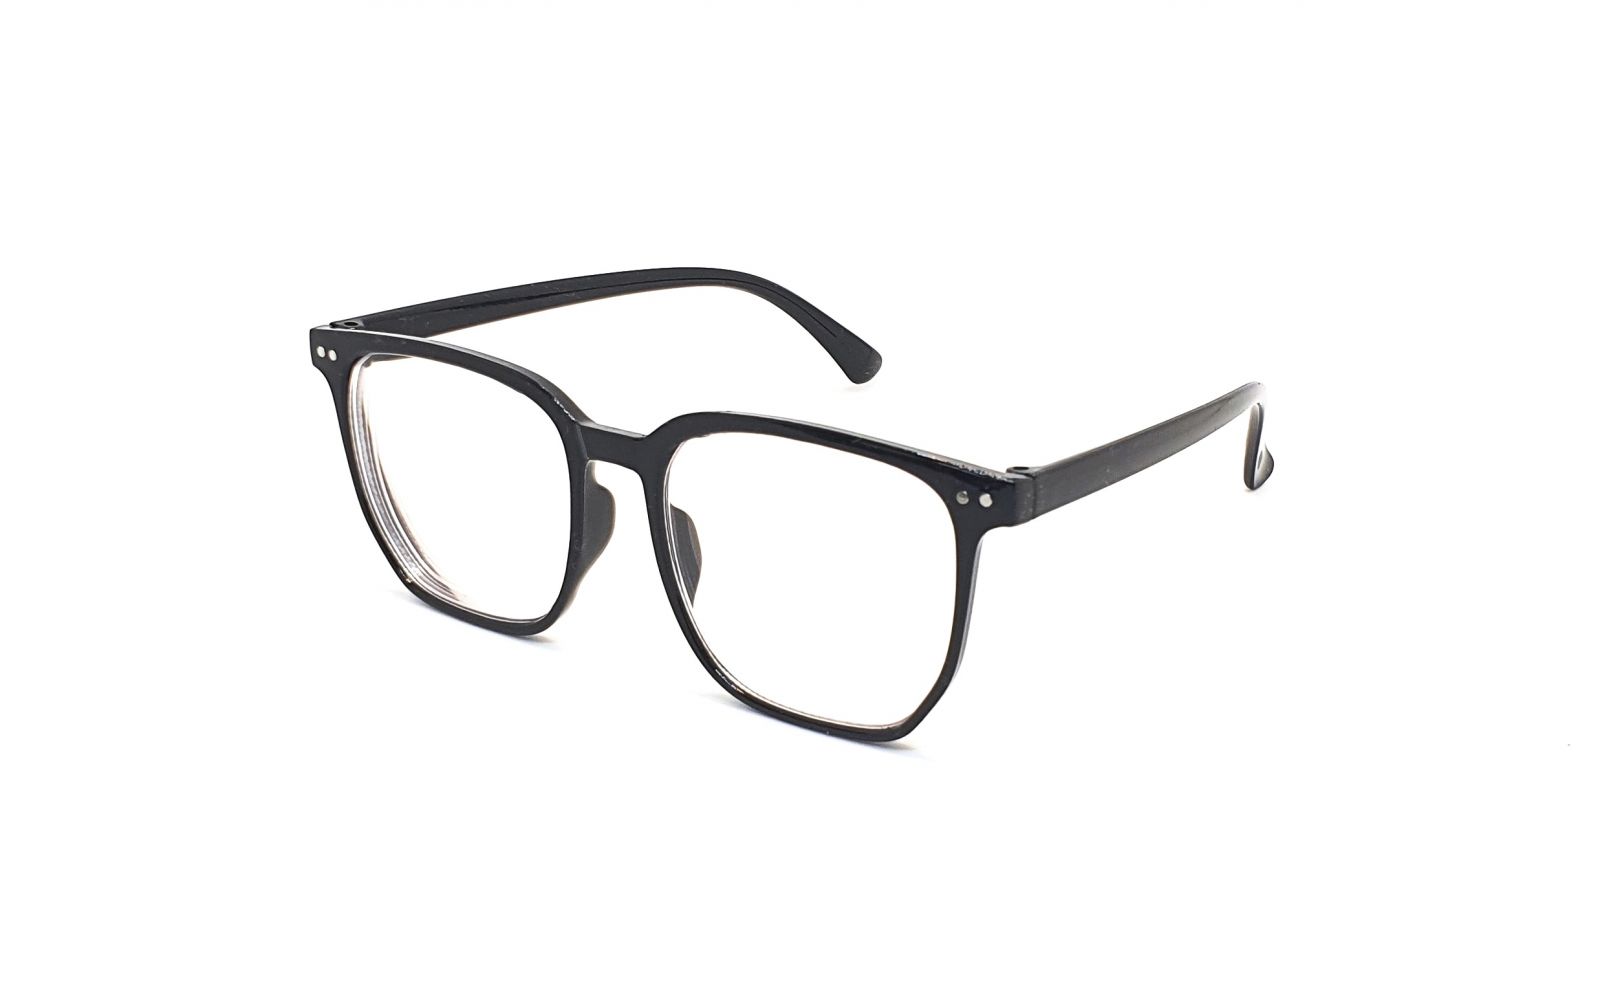 Samozabarvovací dioptrické brýle F24 / -4,00 black